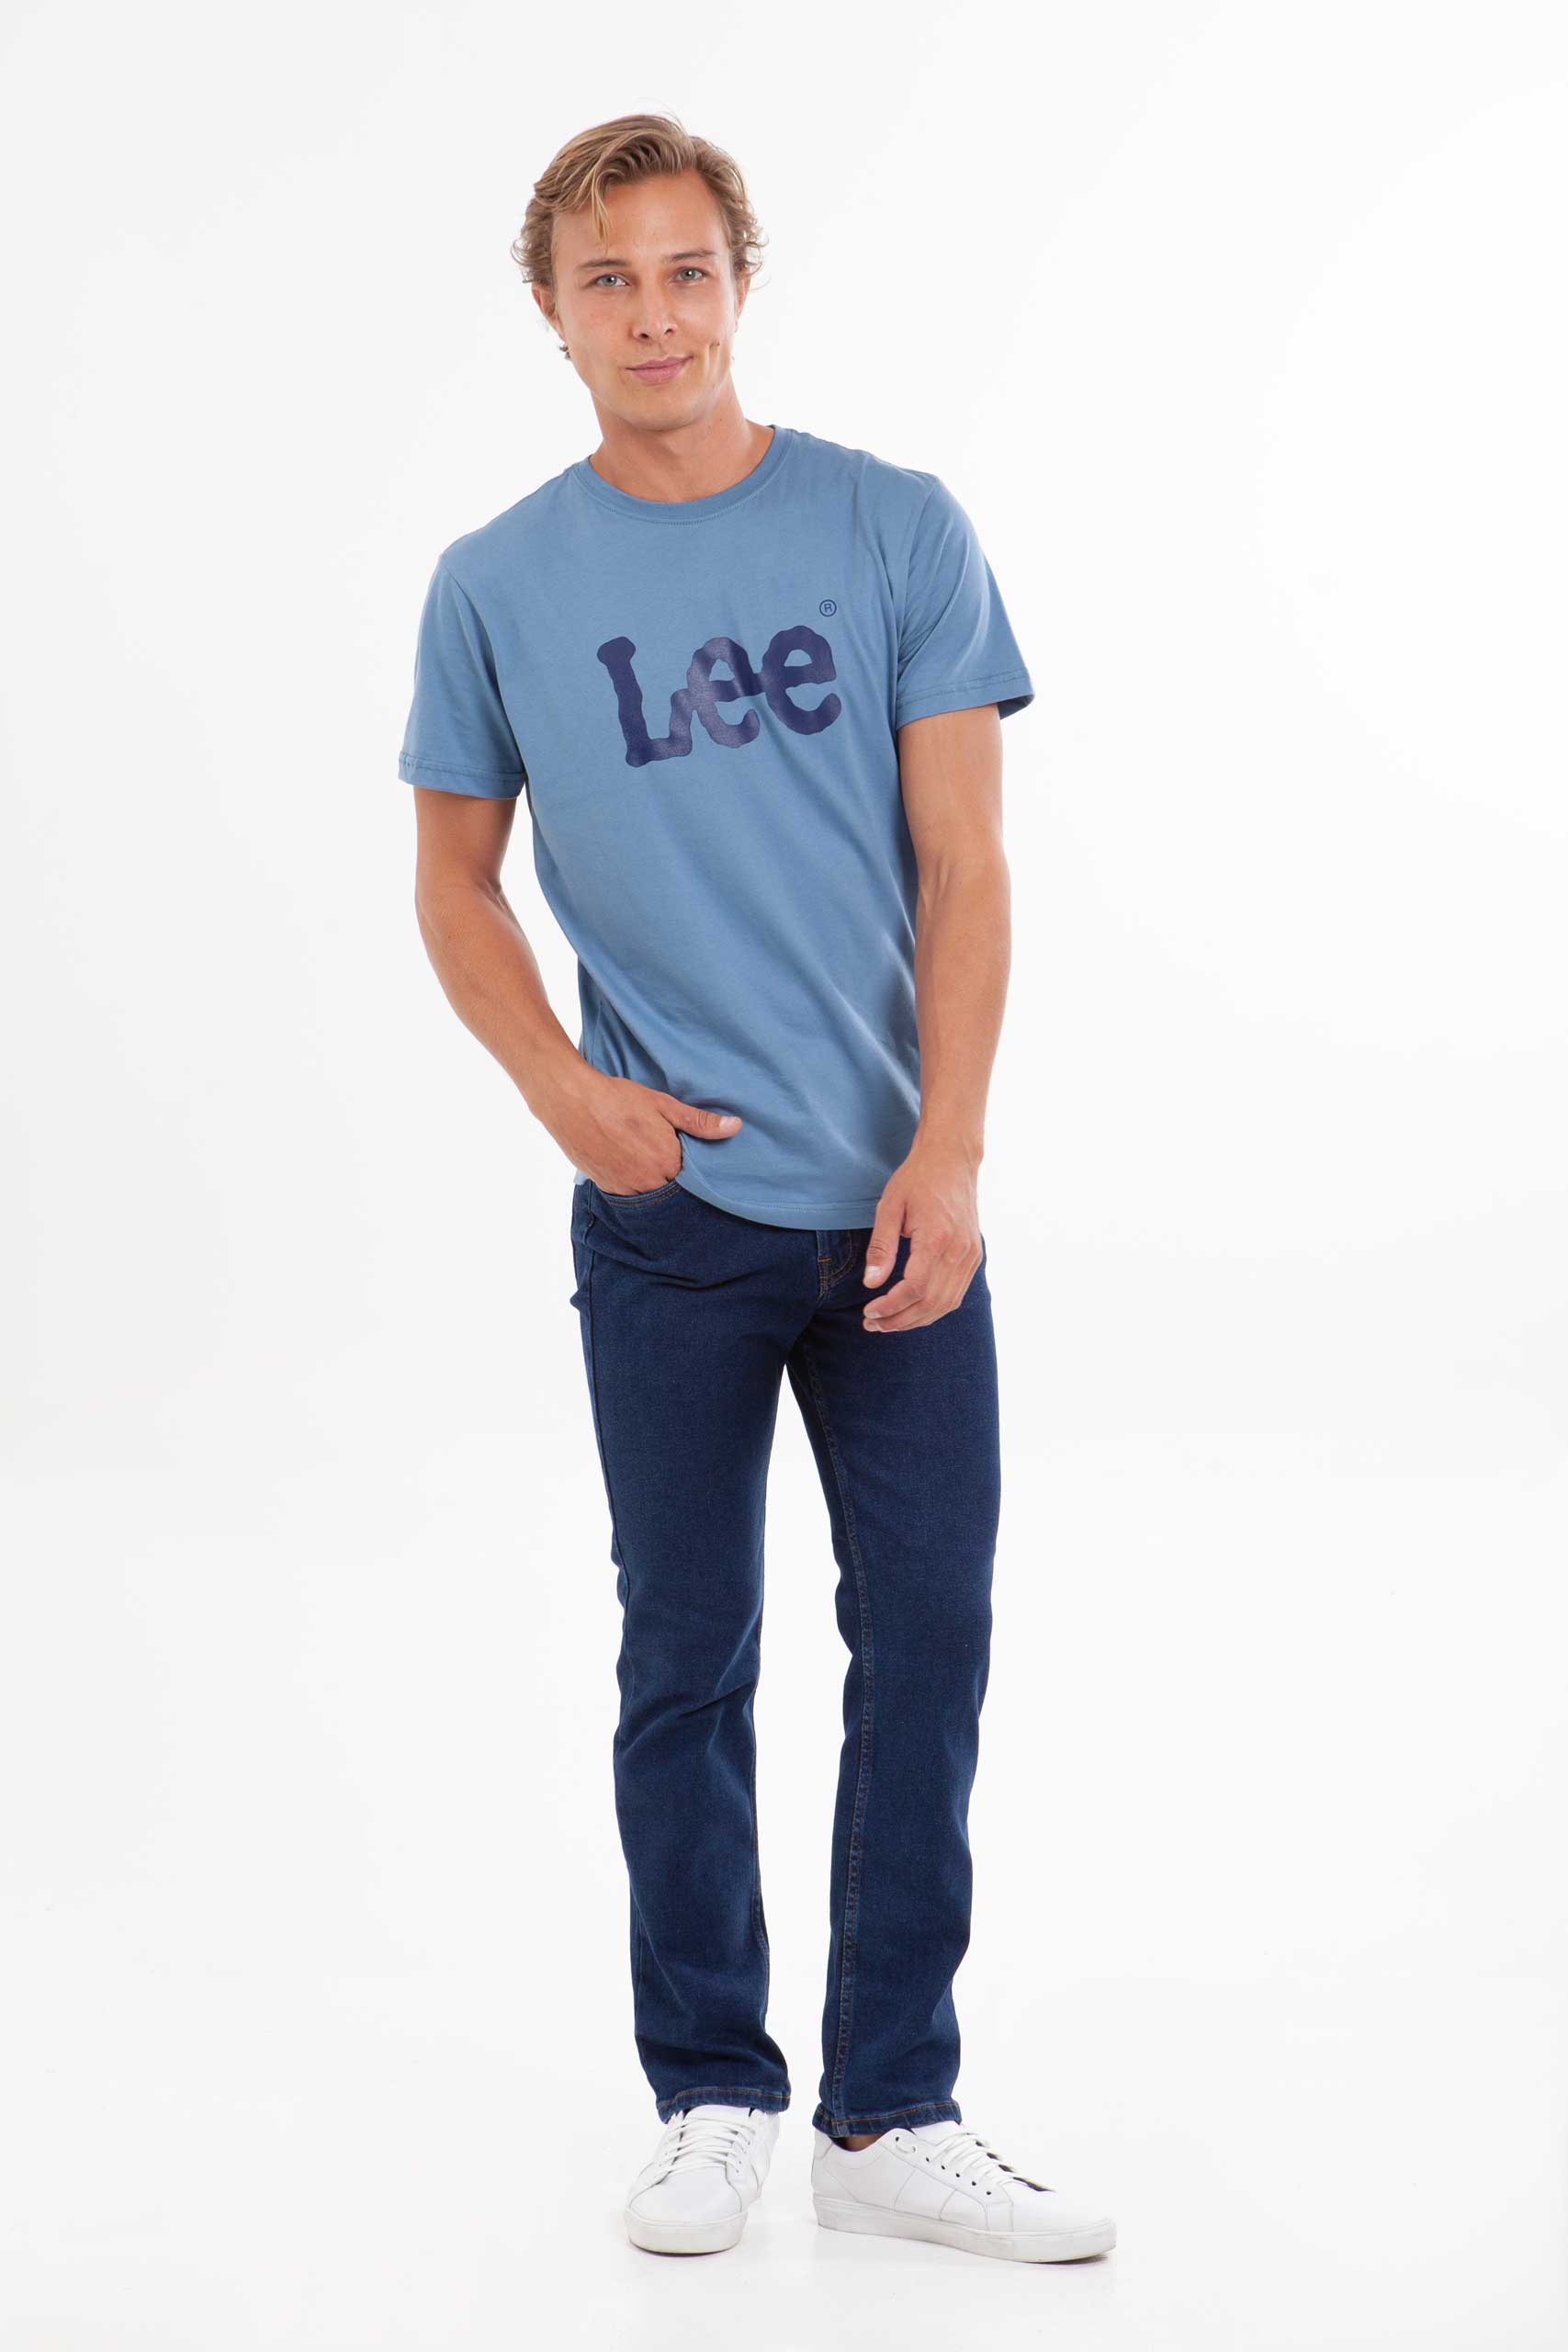 Vista frontal Camiseta Hombre Cobalto marca Lee